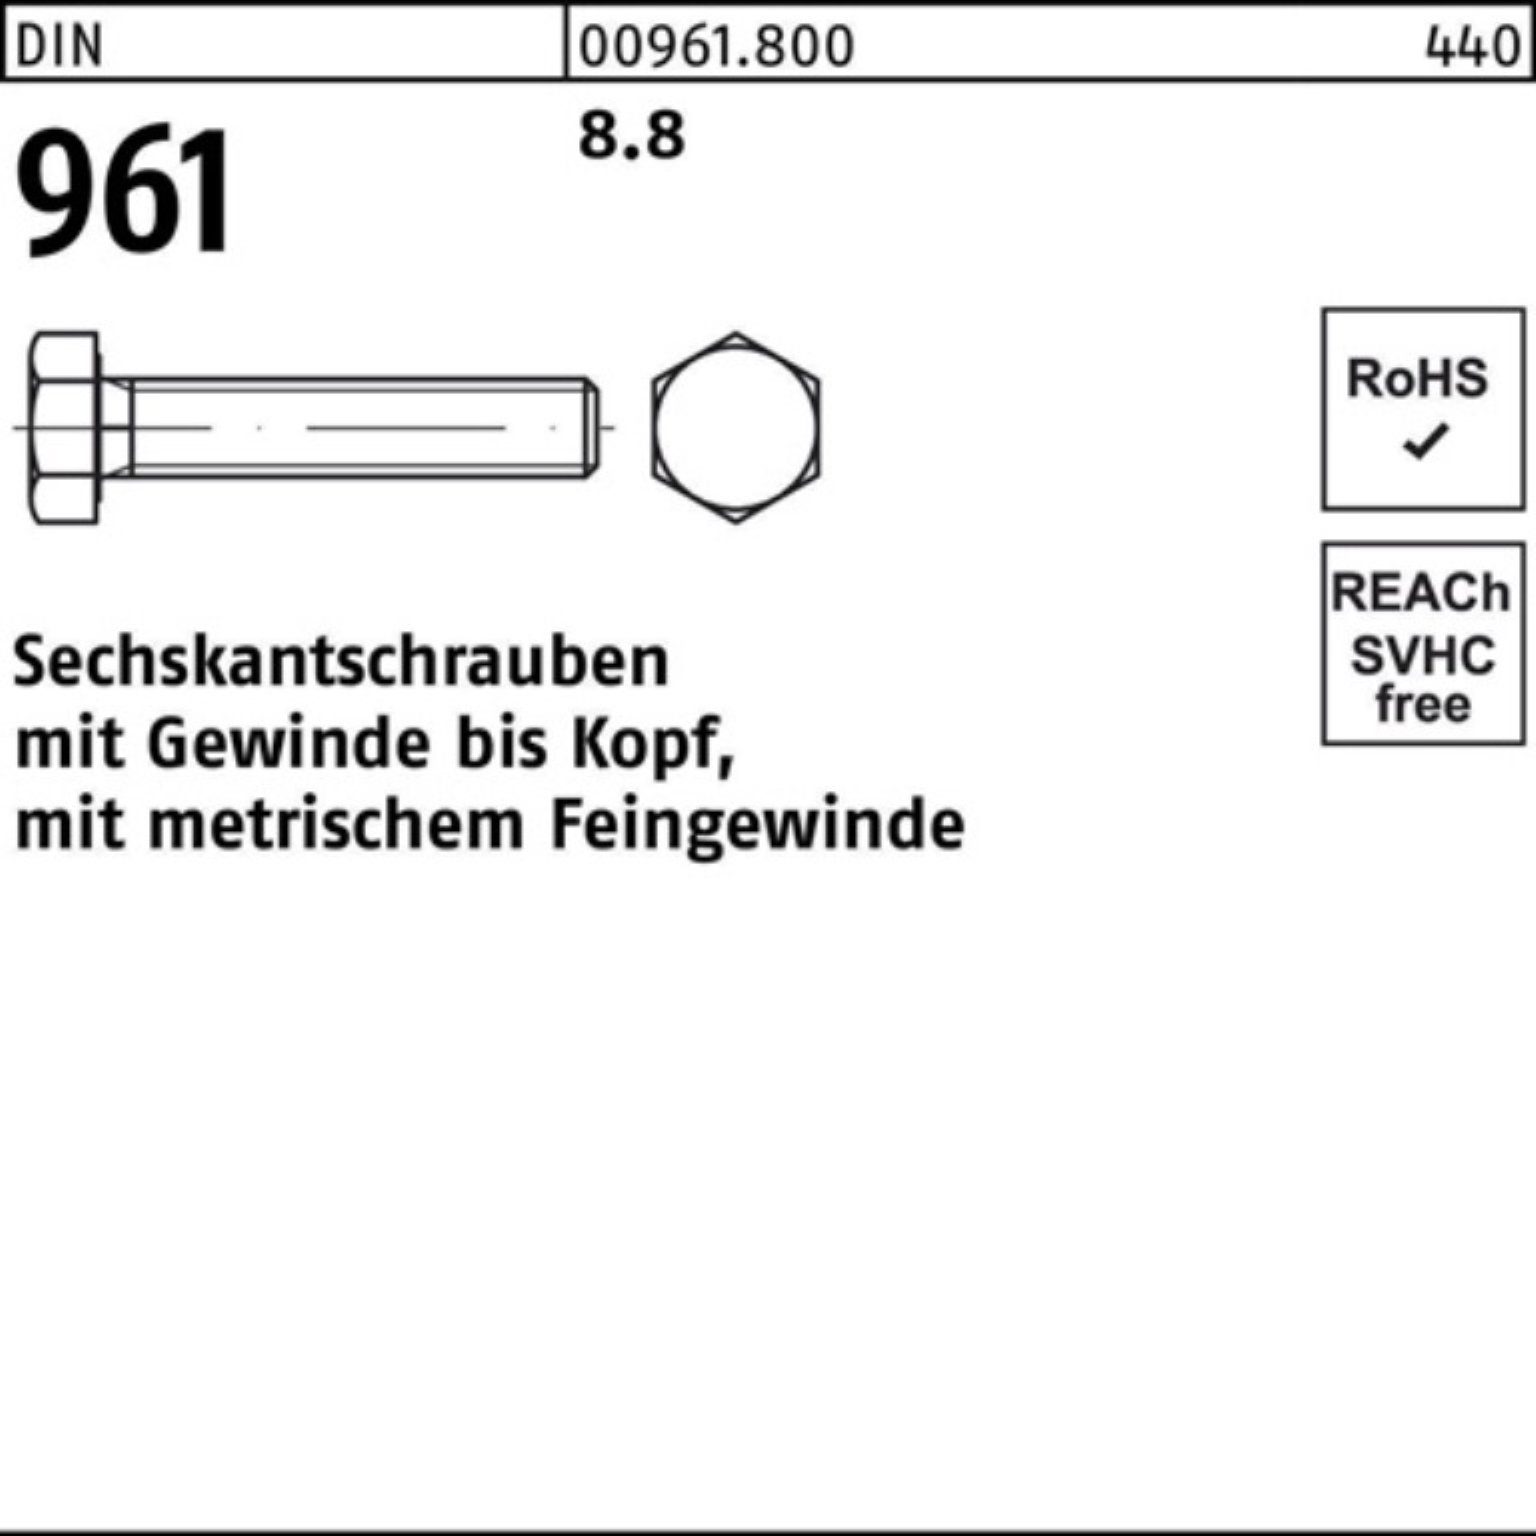 Reyher Sechskantschraube 100er M24x1,5x100 VG 961 10 Sechskantschraube DIN Stück DIN Pack 8.8